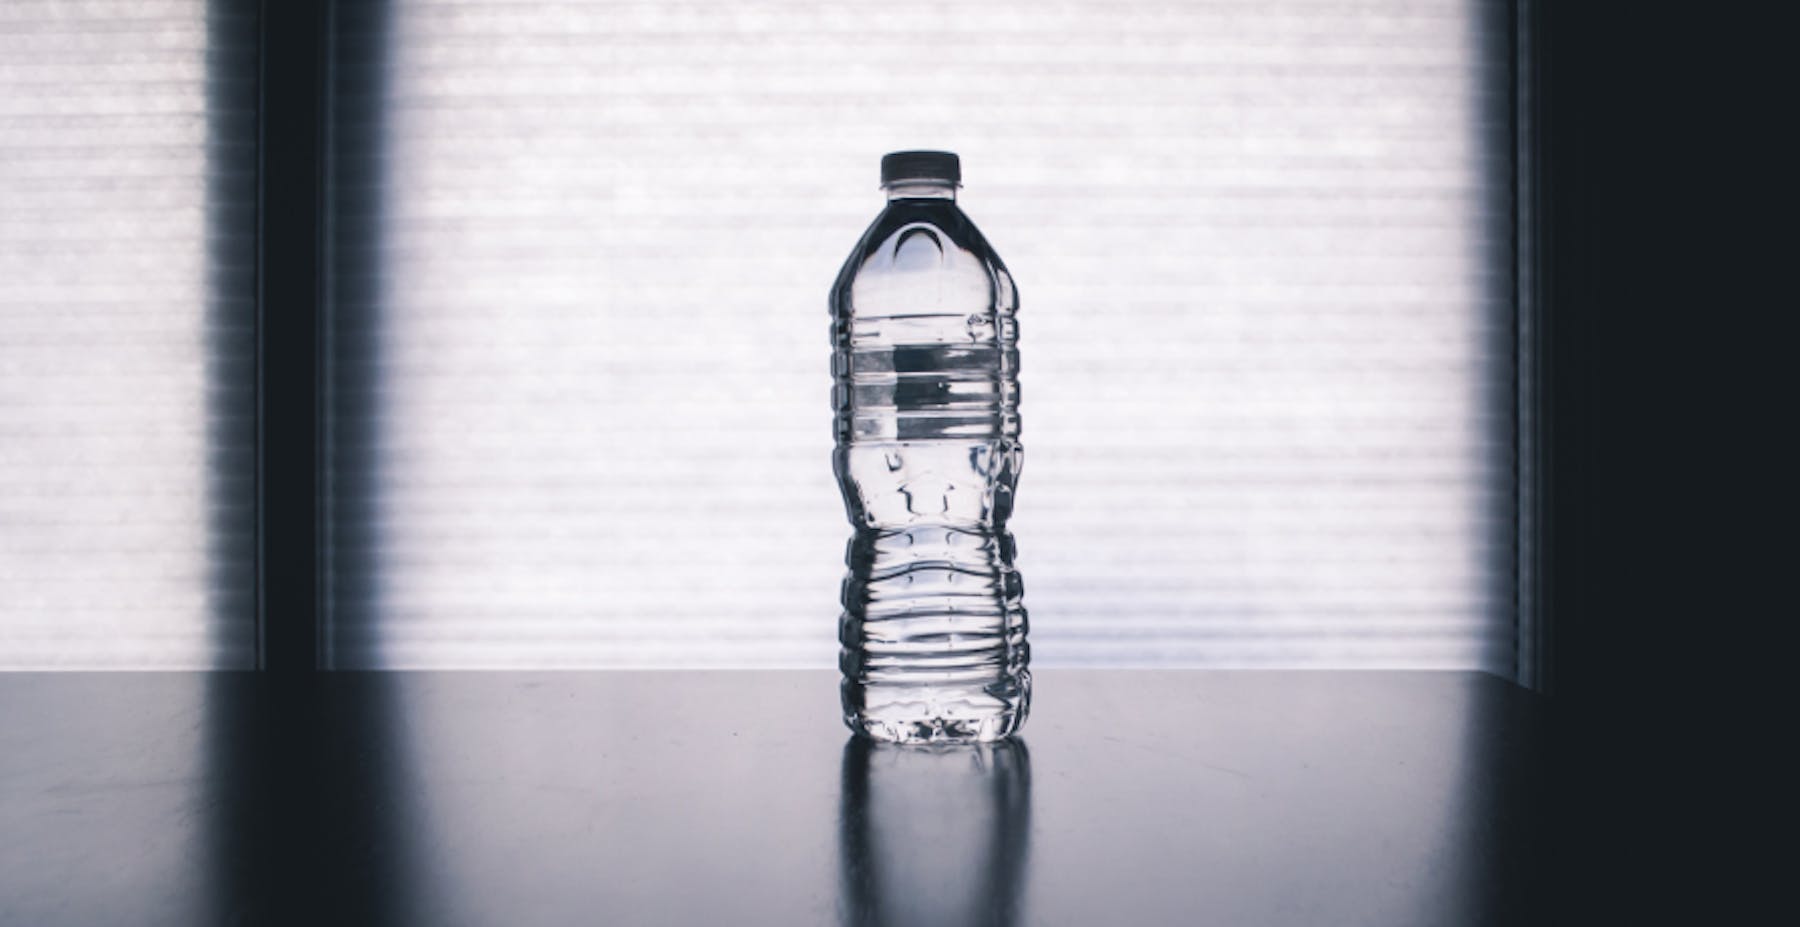 bouteille en plastique posée sur une table